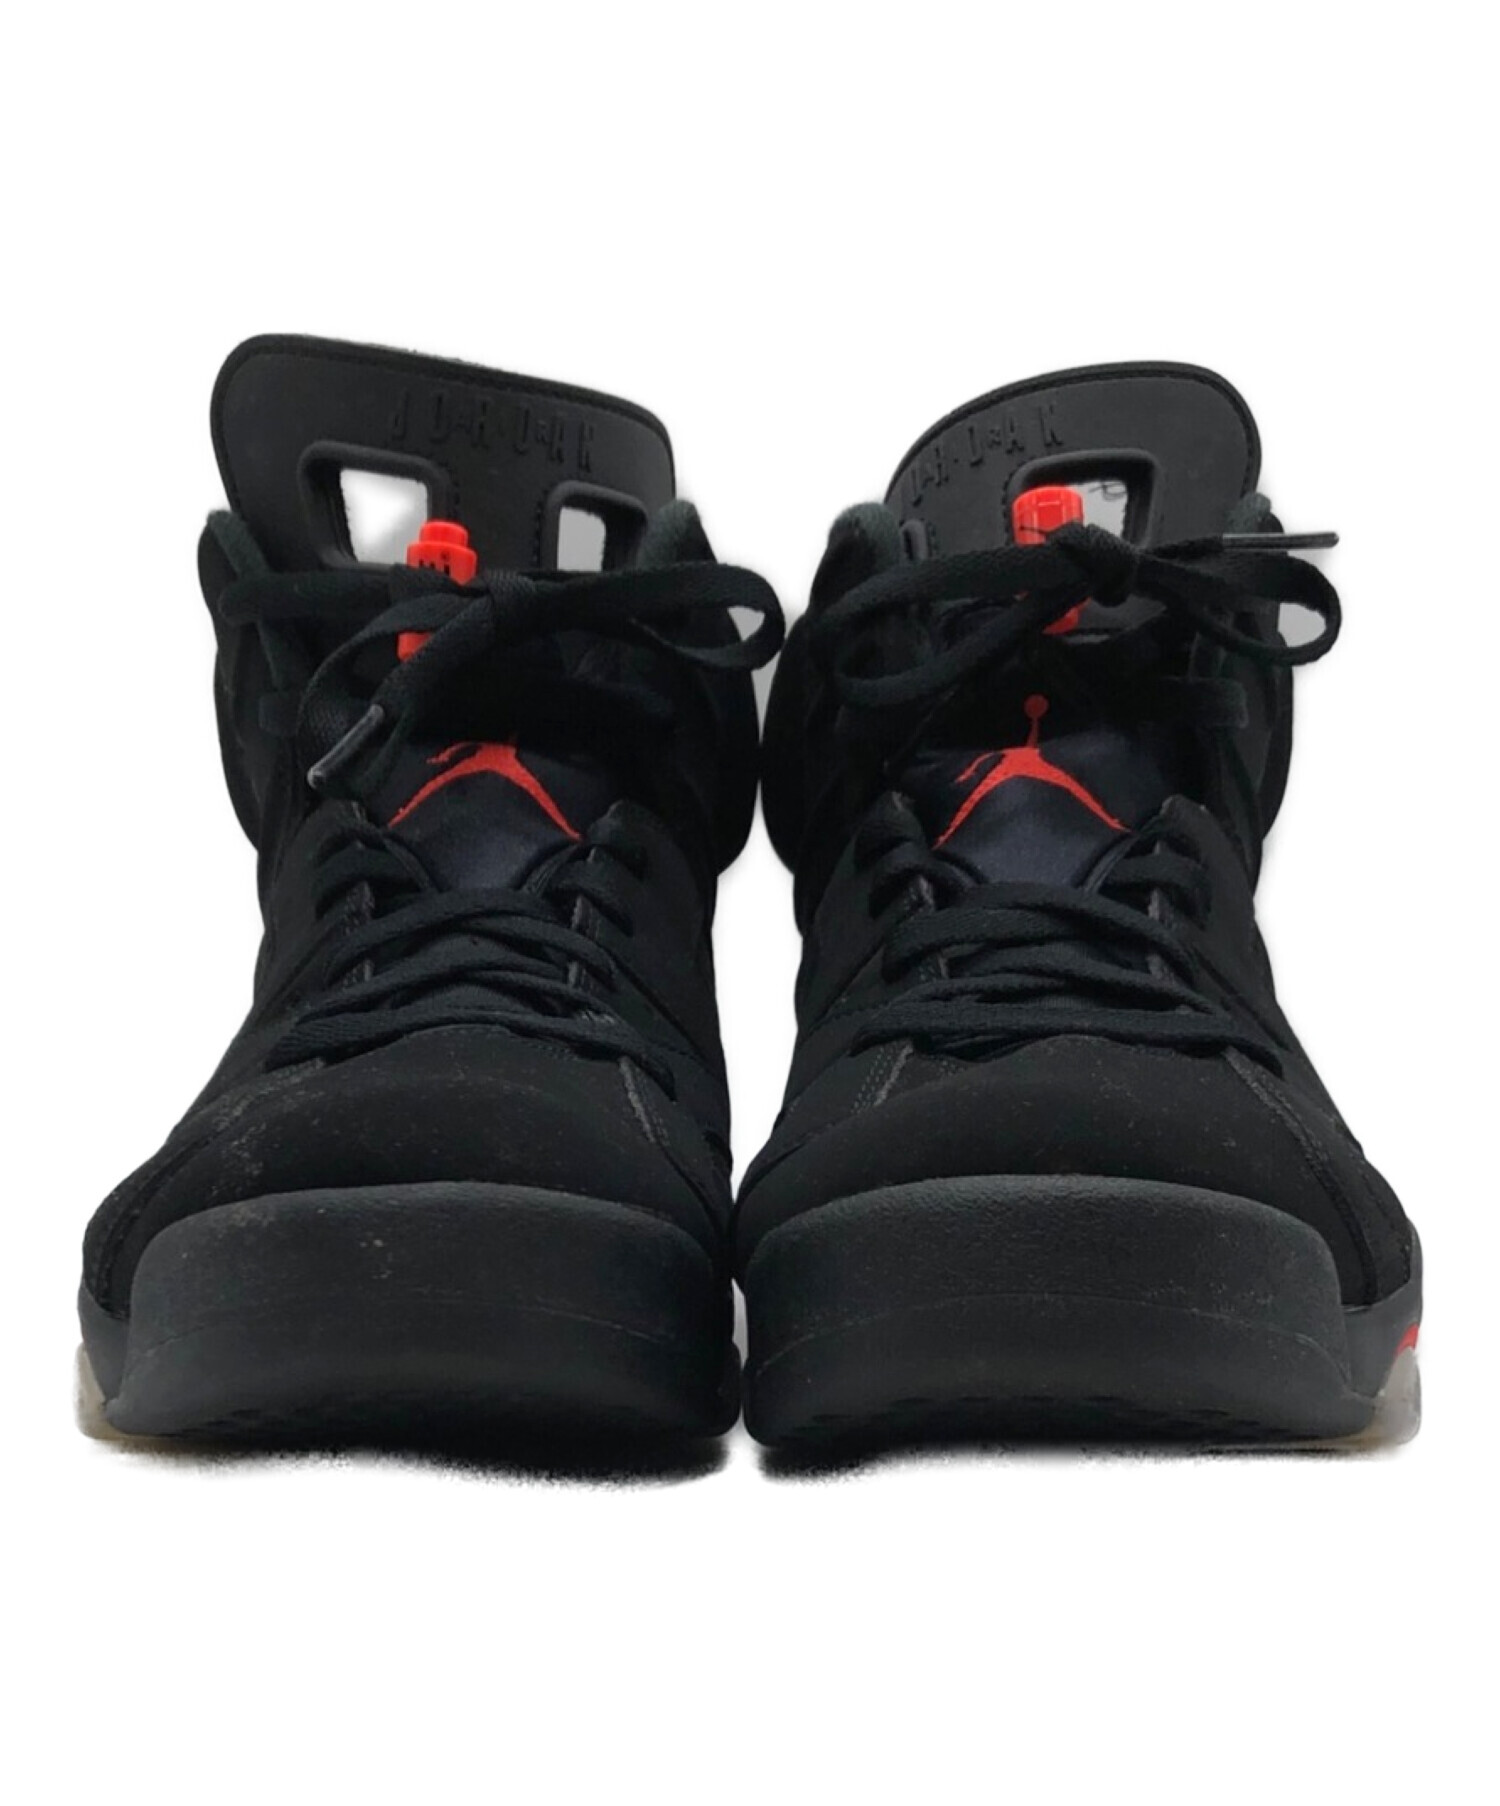 Nike Air Jordan 6 Infra Red US9 ジョーダンサイズはUS95275cmです